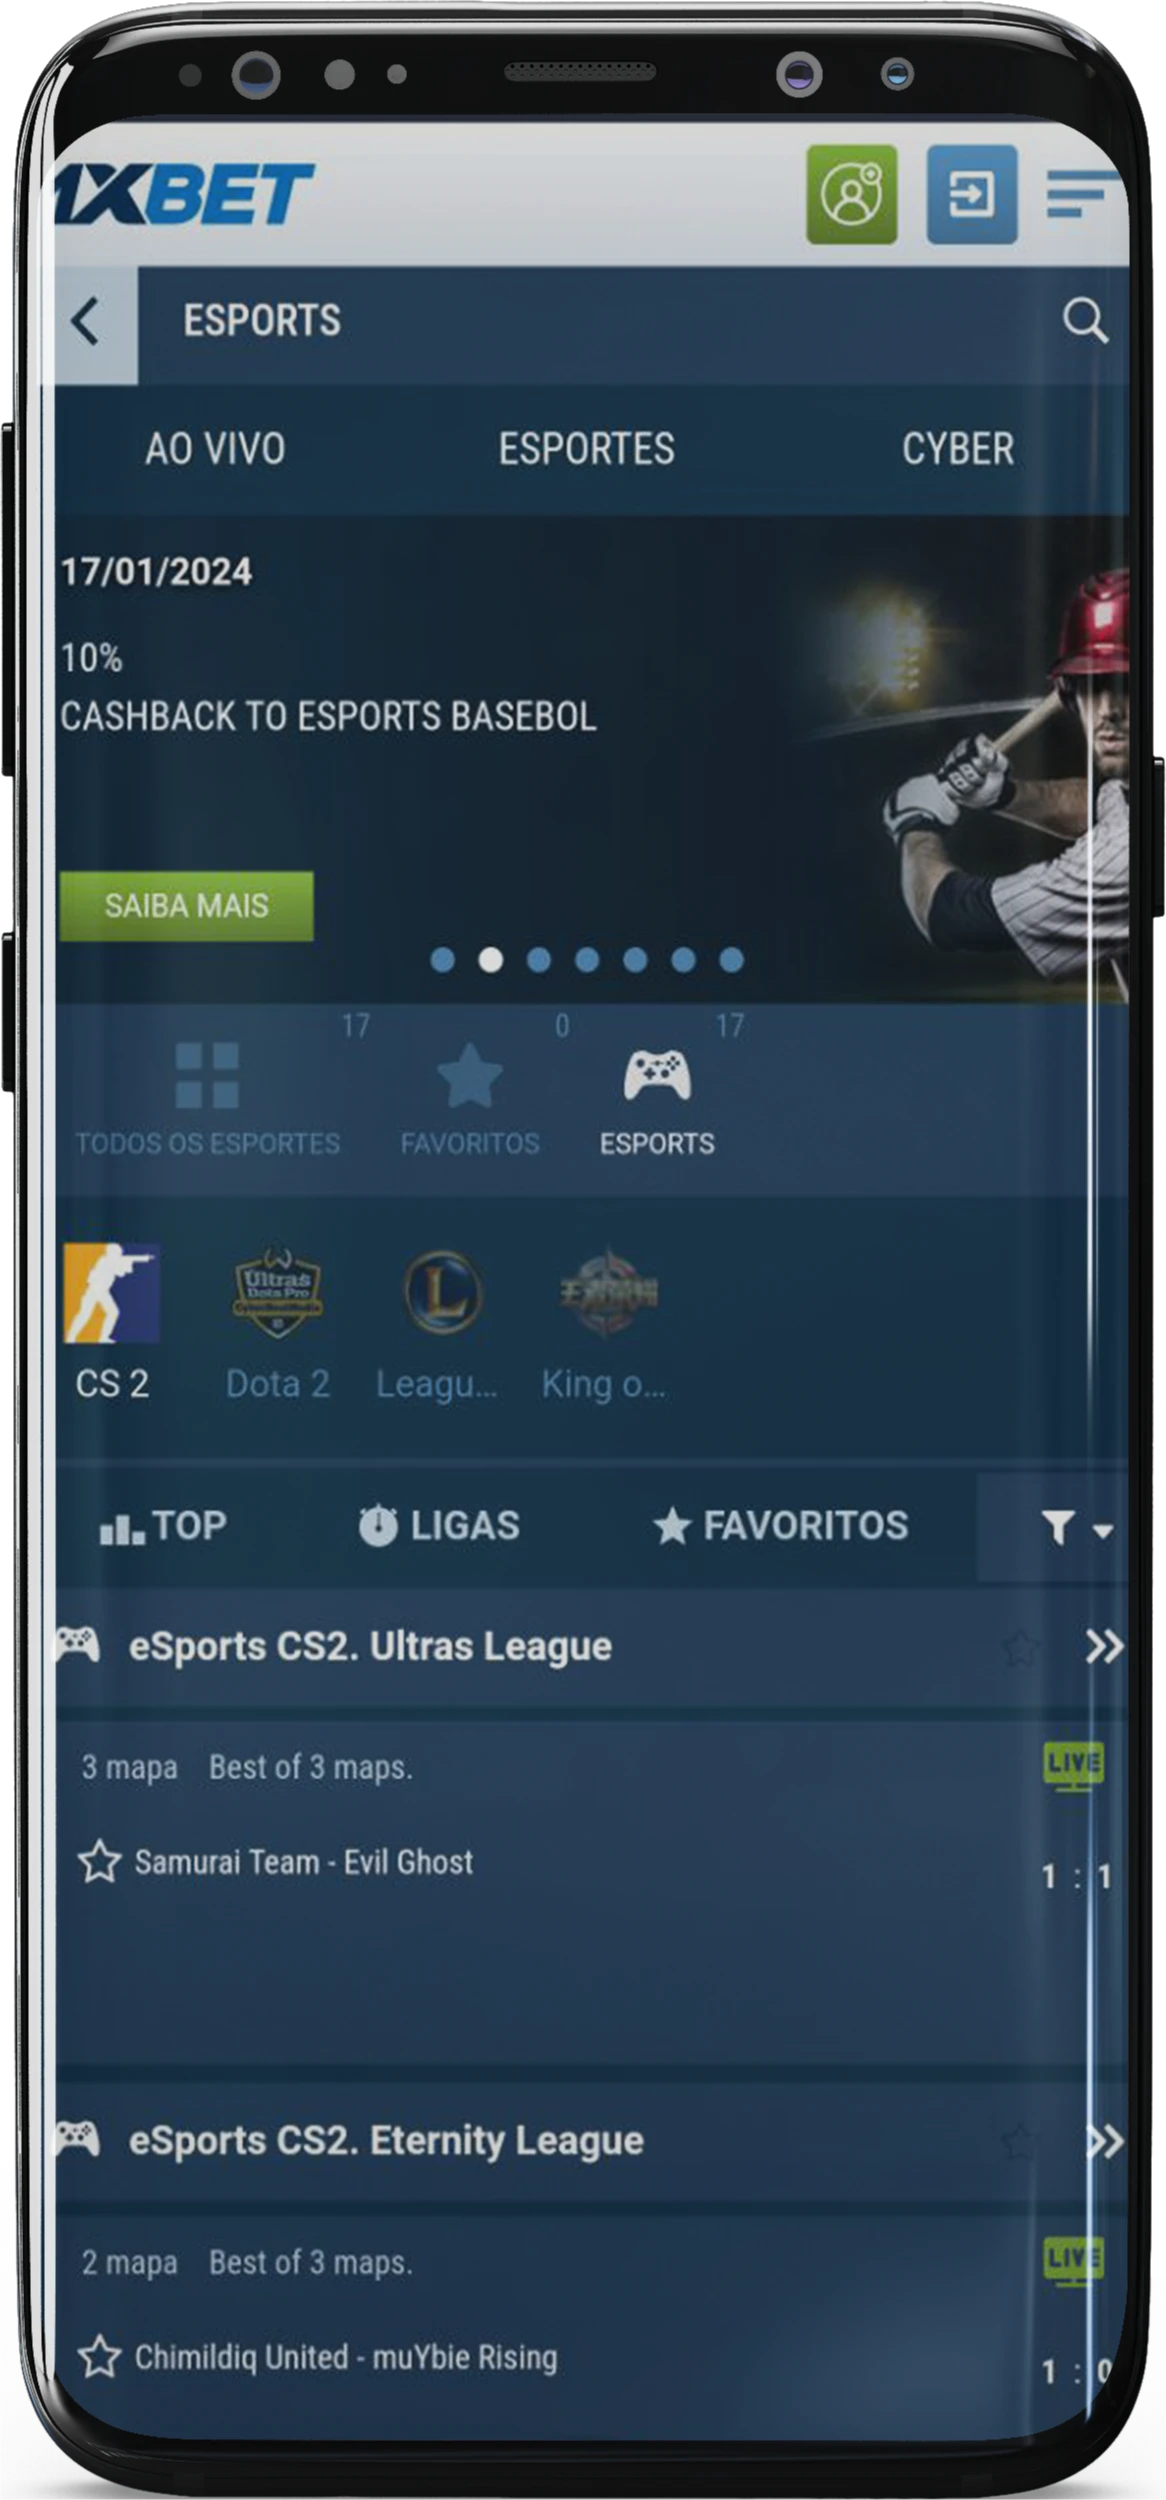 Captura de tela da seção de esportes no aplicativo 1xBet